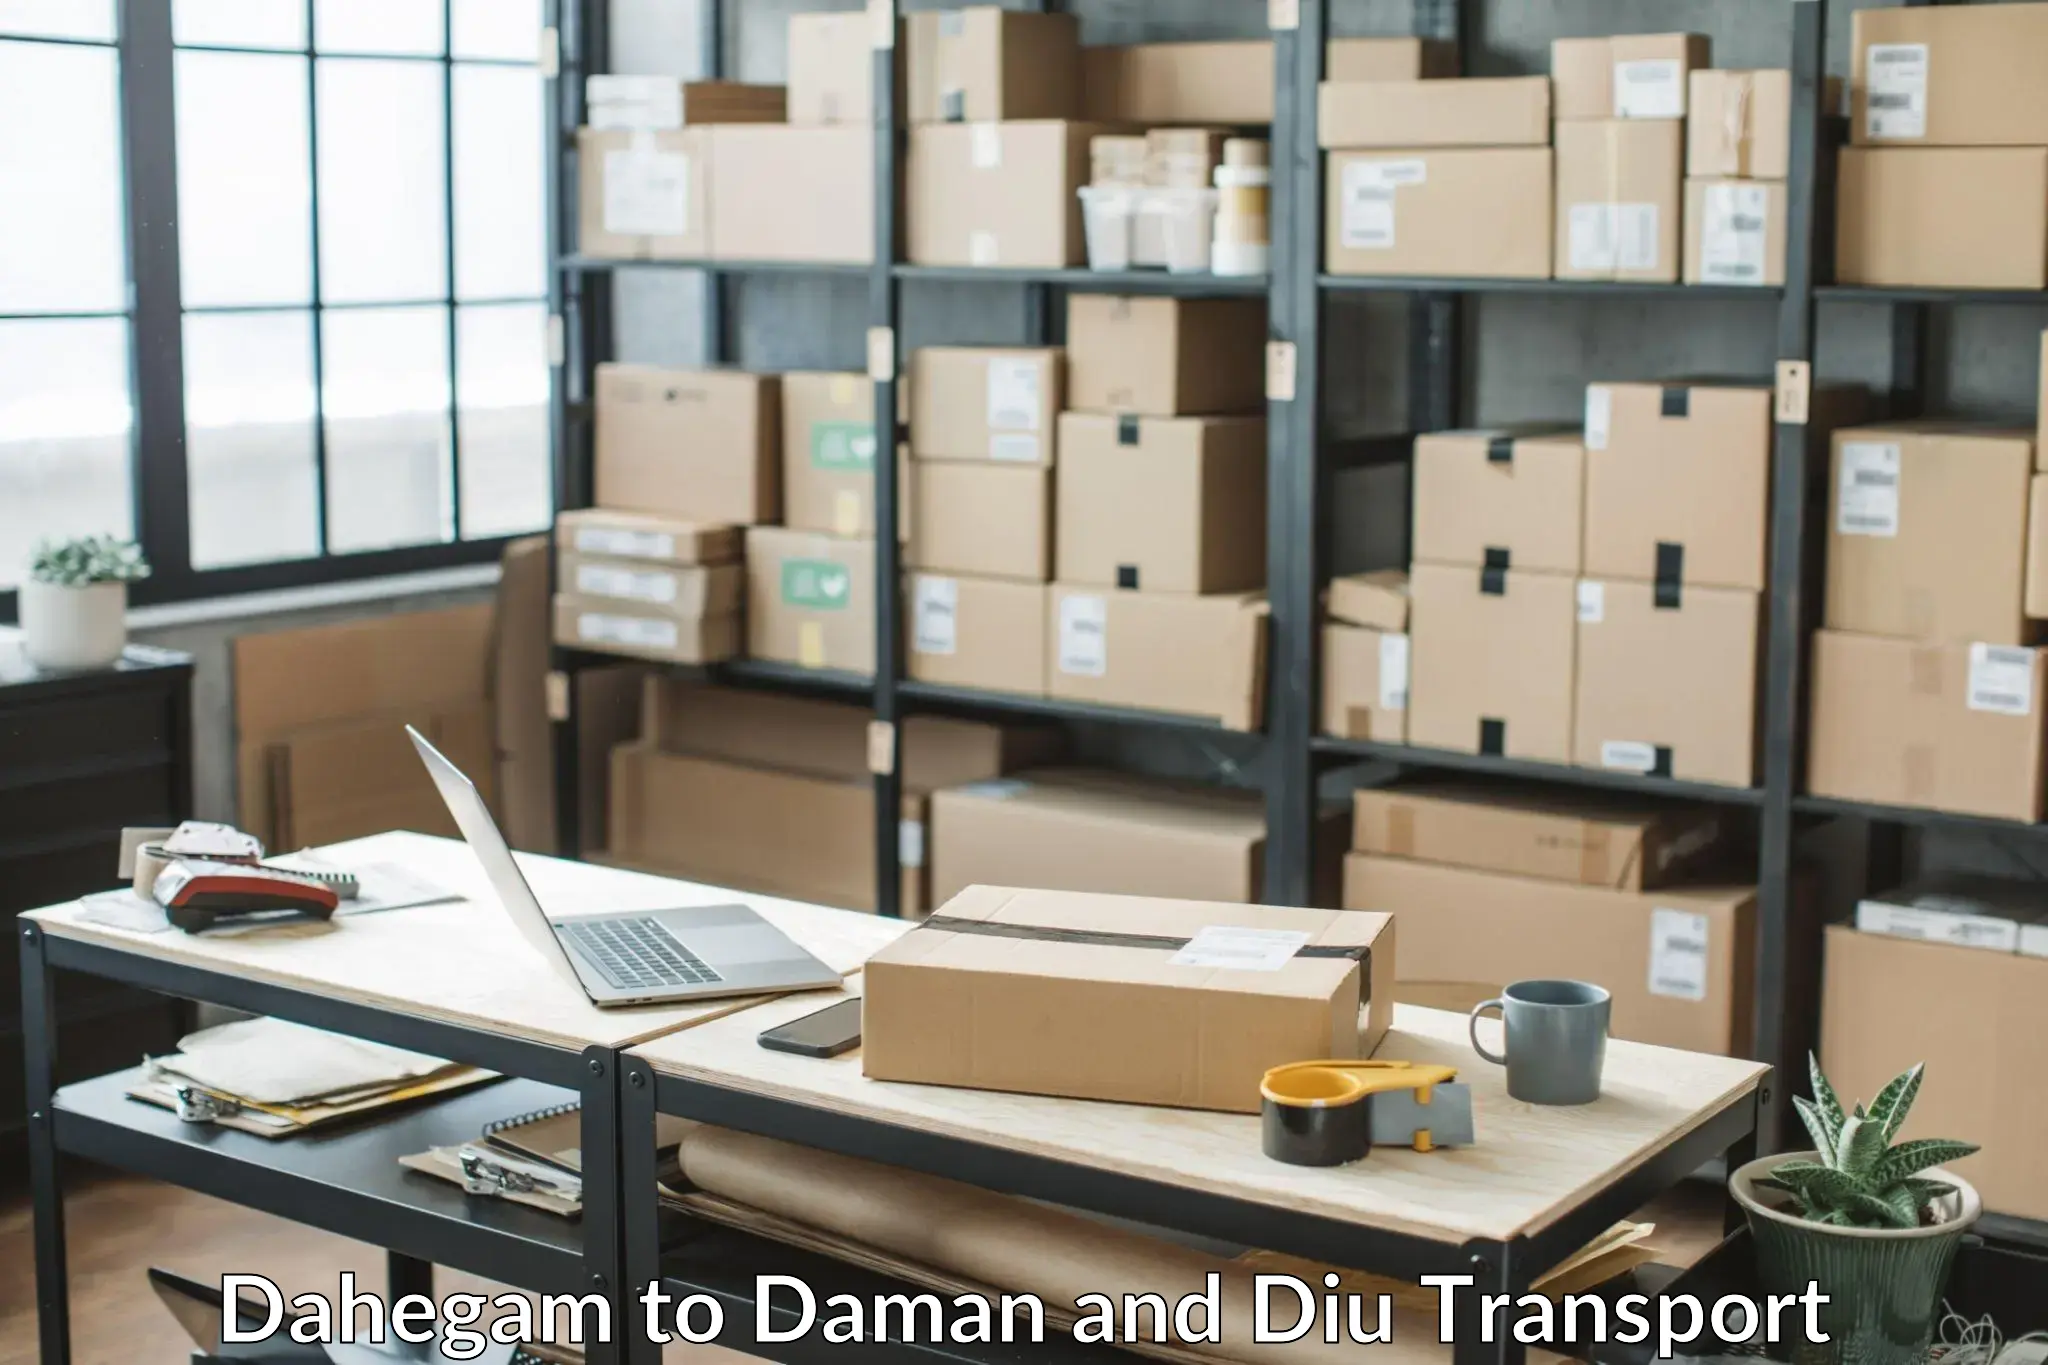 Container transportation services Dahegam to Diu